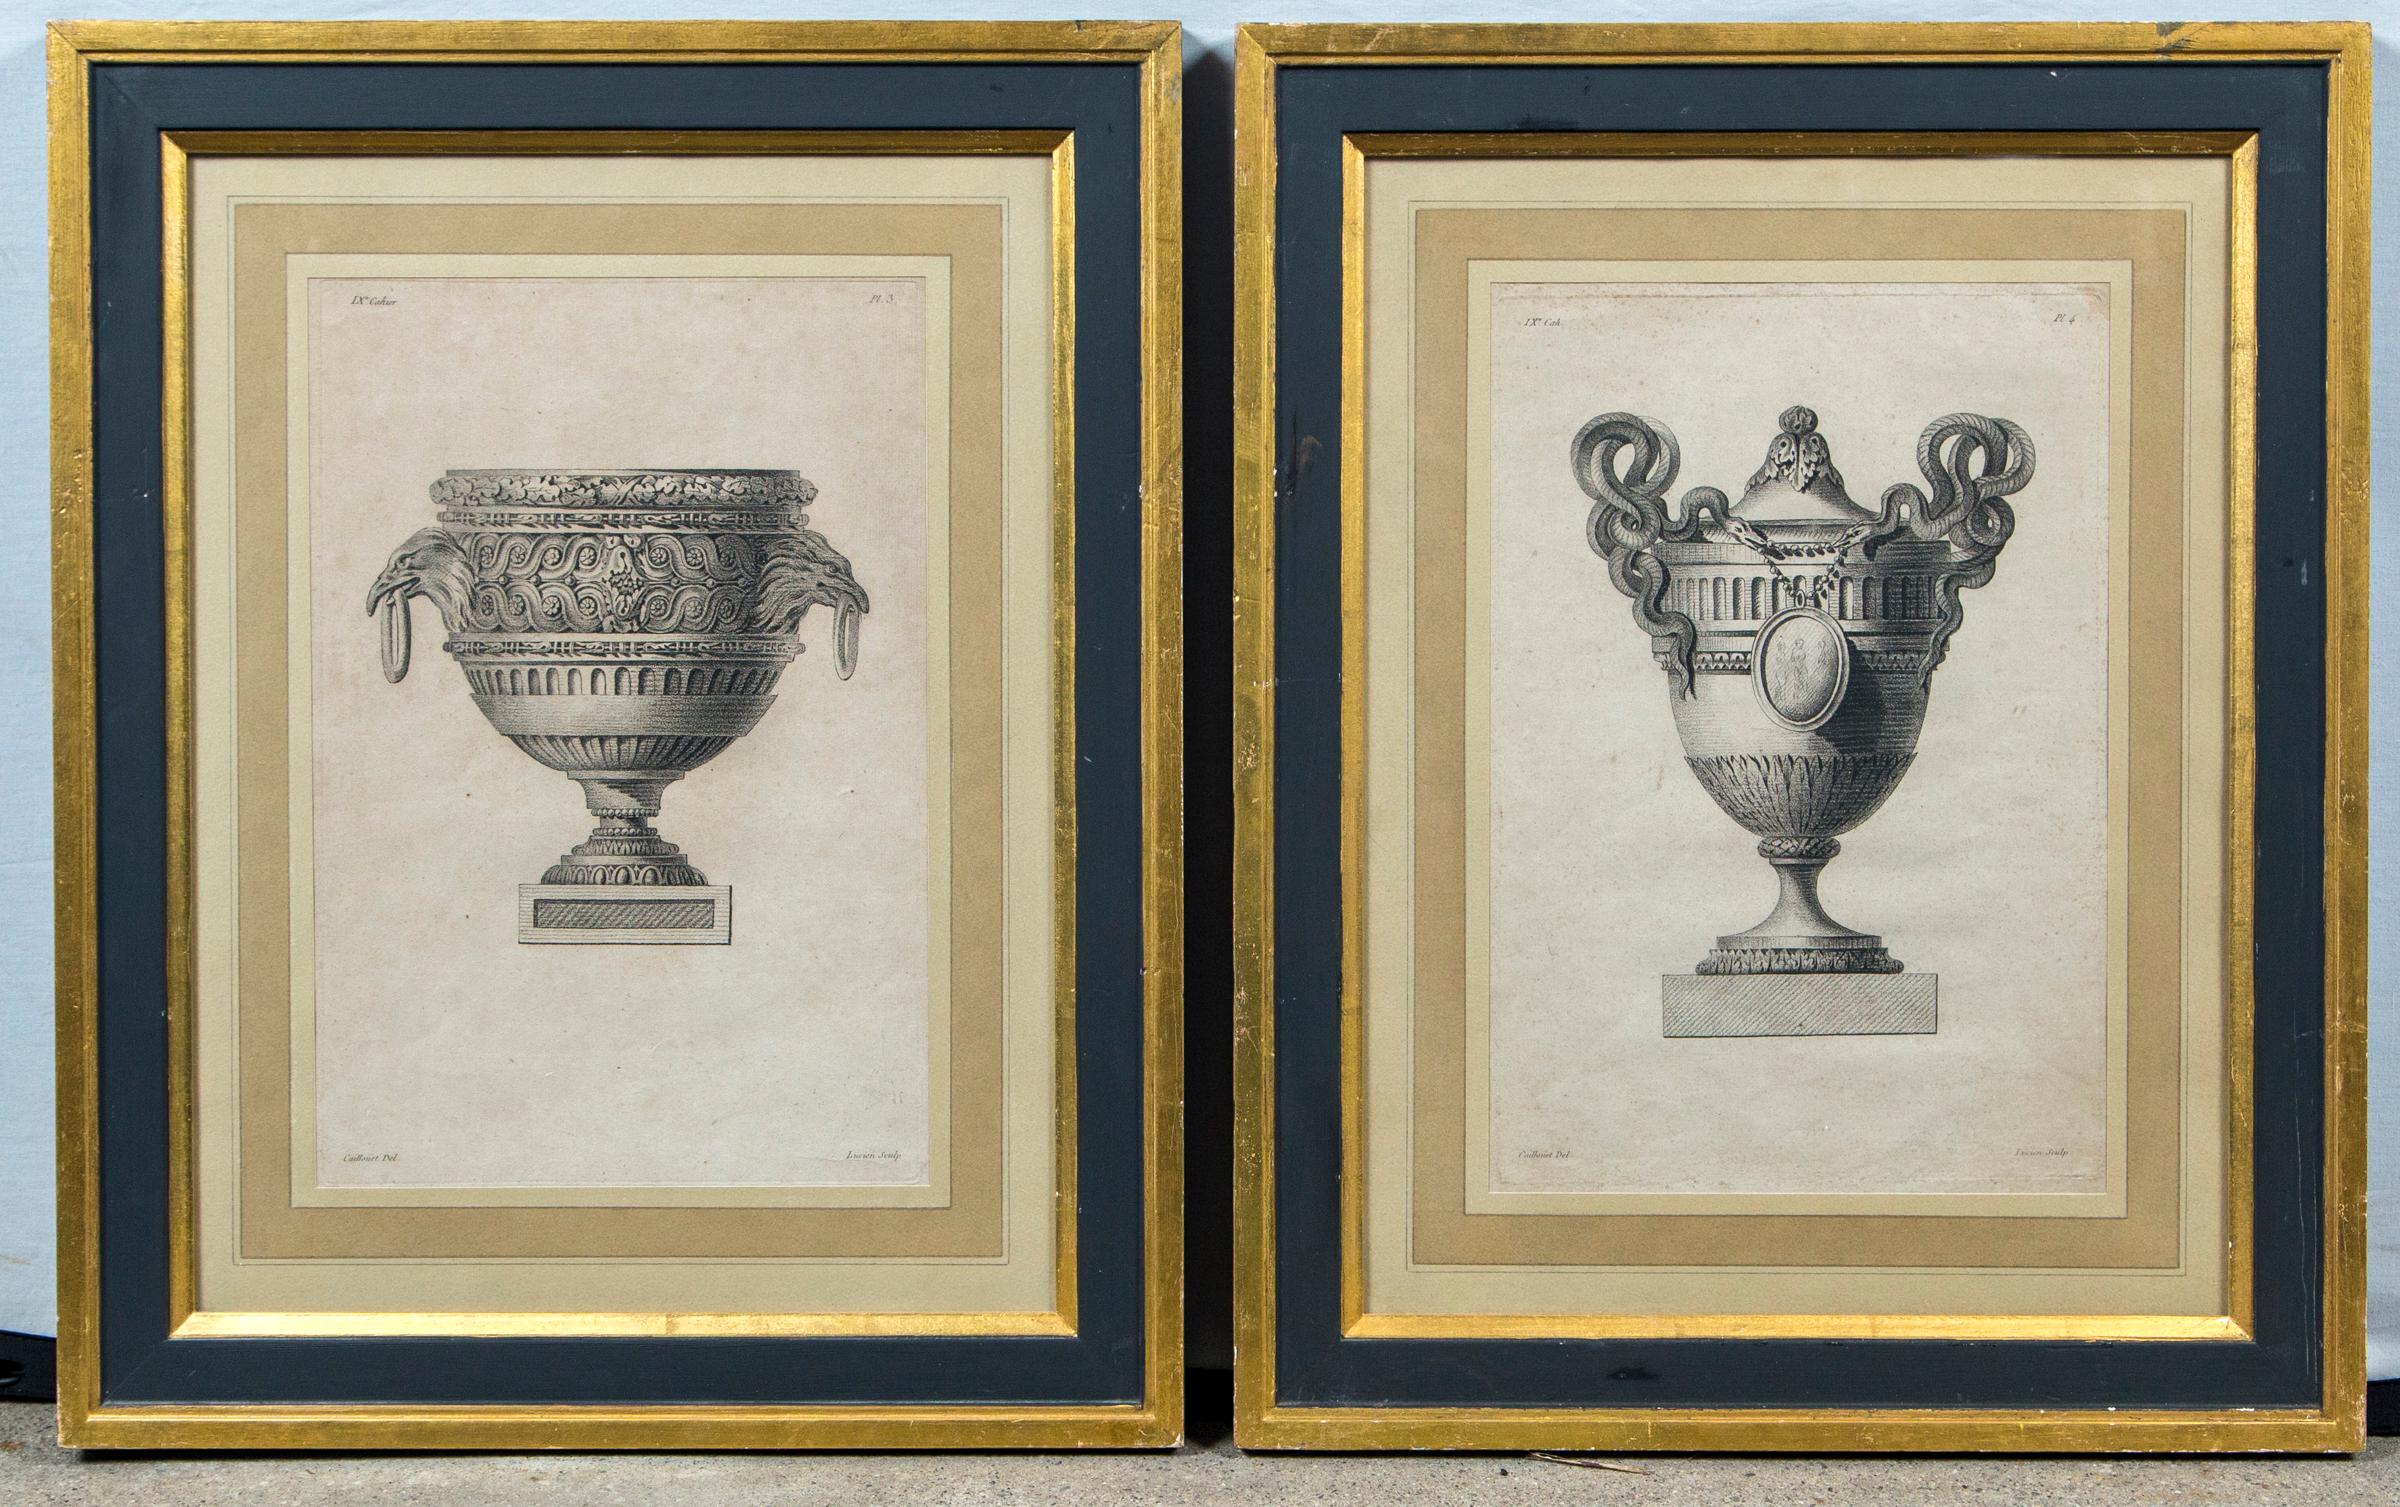 Satz von 4 gerahmten Vasengravuren von Andre-Louis Caillouet (1778-1817), Frankreich, Ende 18. Jeder Stich zeigt einen anderen Stil einer Ziervase aus der Serie 